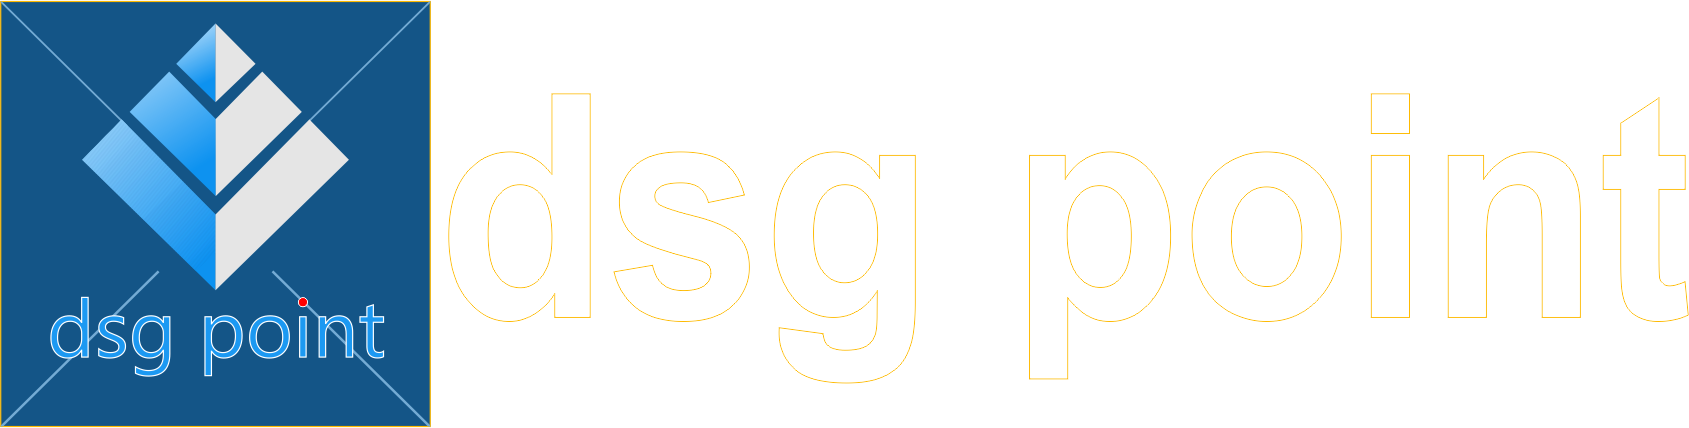 sajt logo1